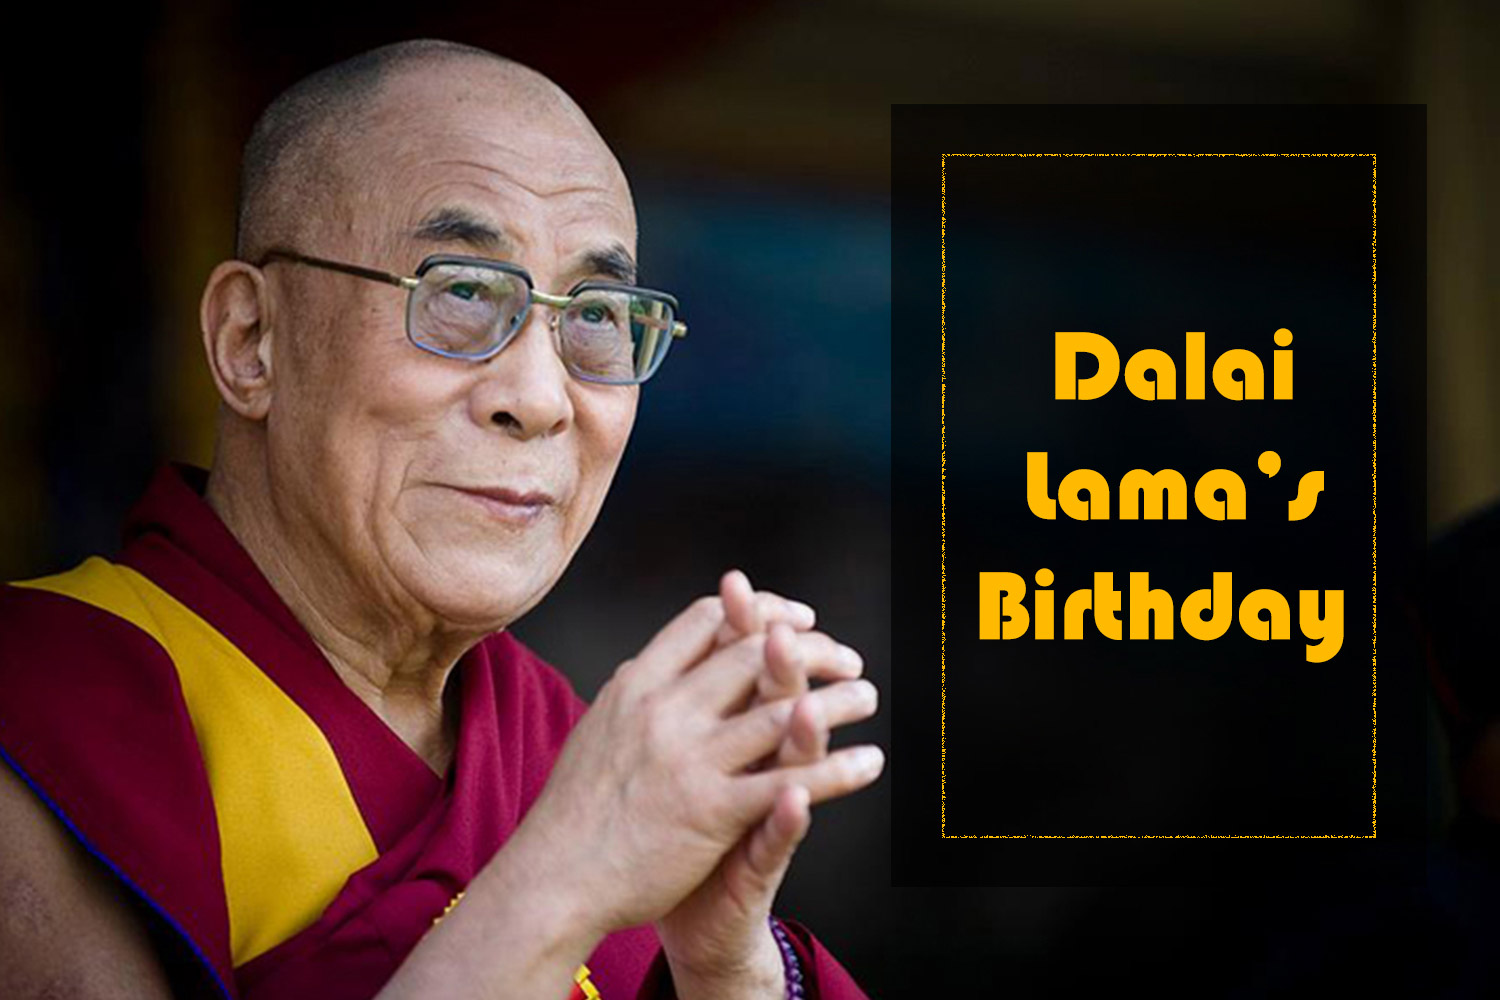 Dalai Lama’s Birthday